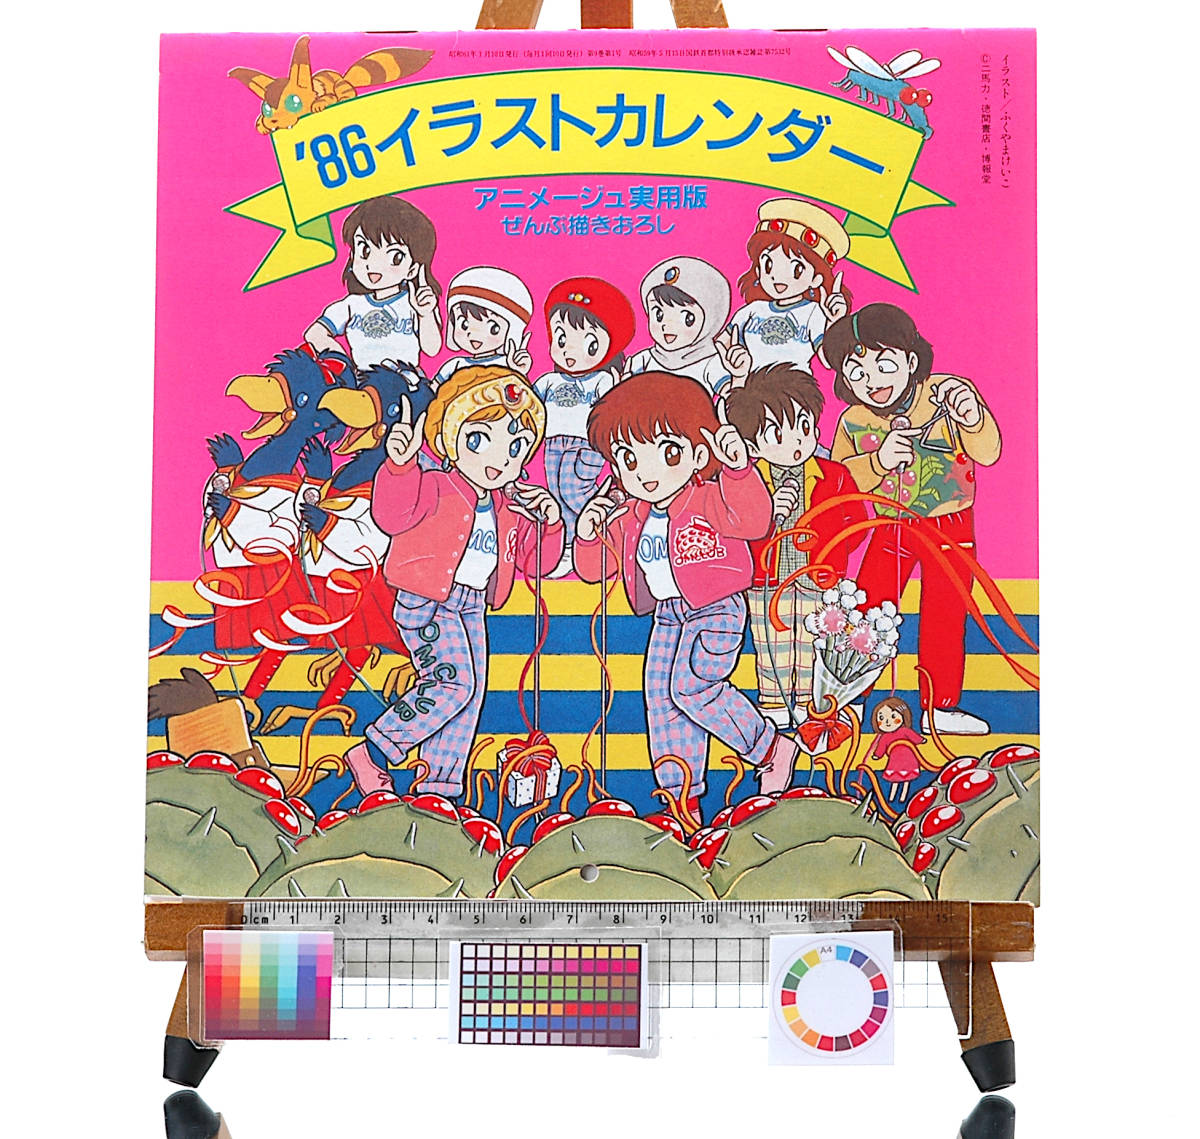 アニメージュ [Vintage] [New Item] [Delivery Free]1986 Animege Bonus All Drawn Anime Illustration Calendar Practical version[tag3333]